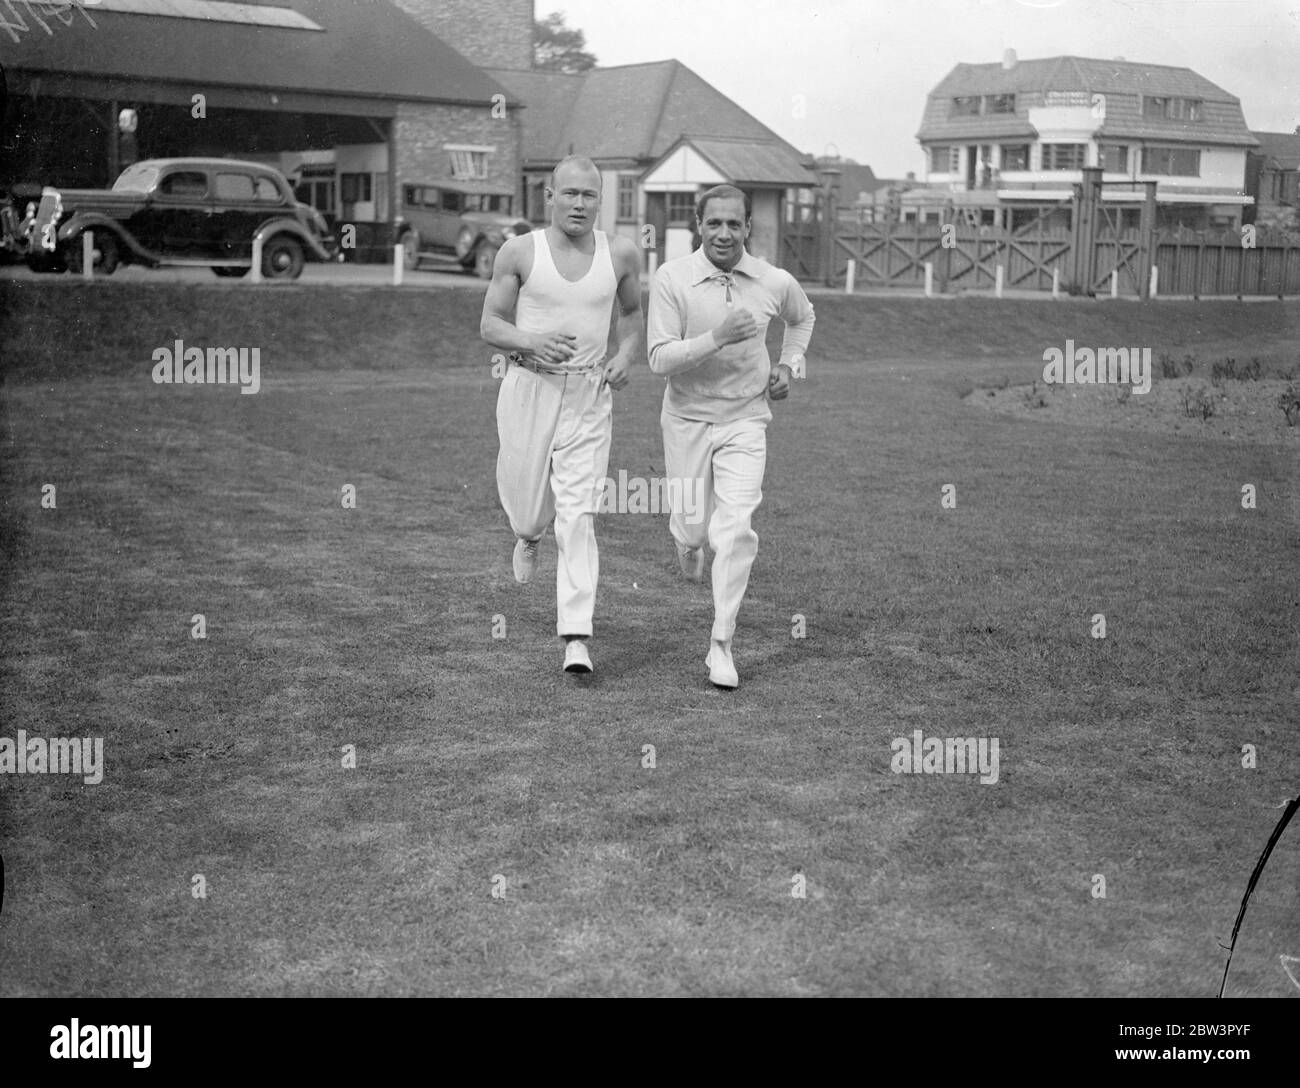 King moitiés £200 peine sur tout dans la lutte . Bob Gregory ( à droite ) pour une course à Elstree après avoir reçu des nouvelles de la clémence du roi . Il travaille actuellement dans un film . 14 mai 1936 Banque D'Images